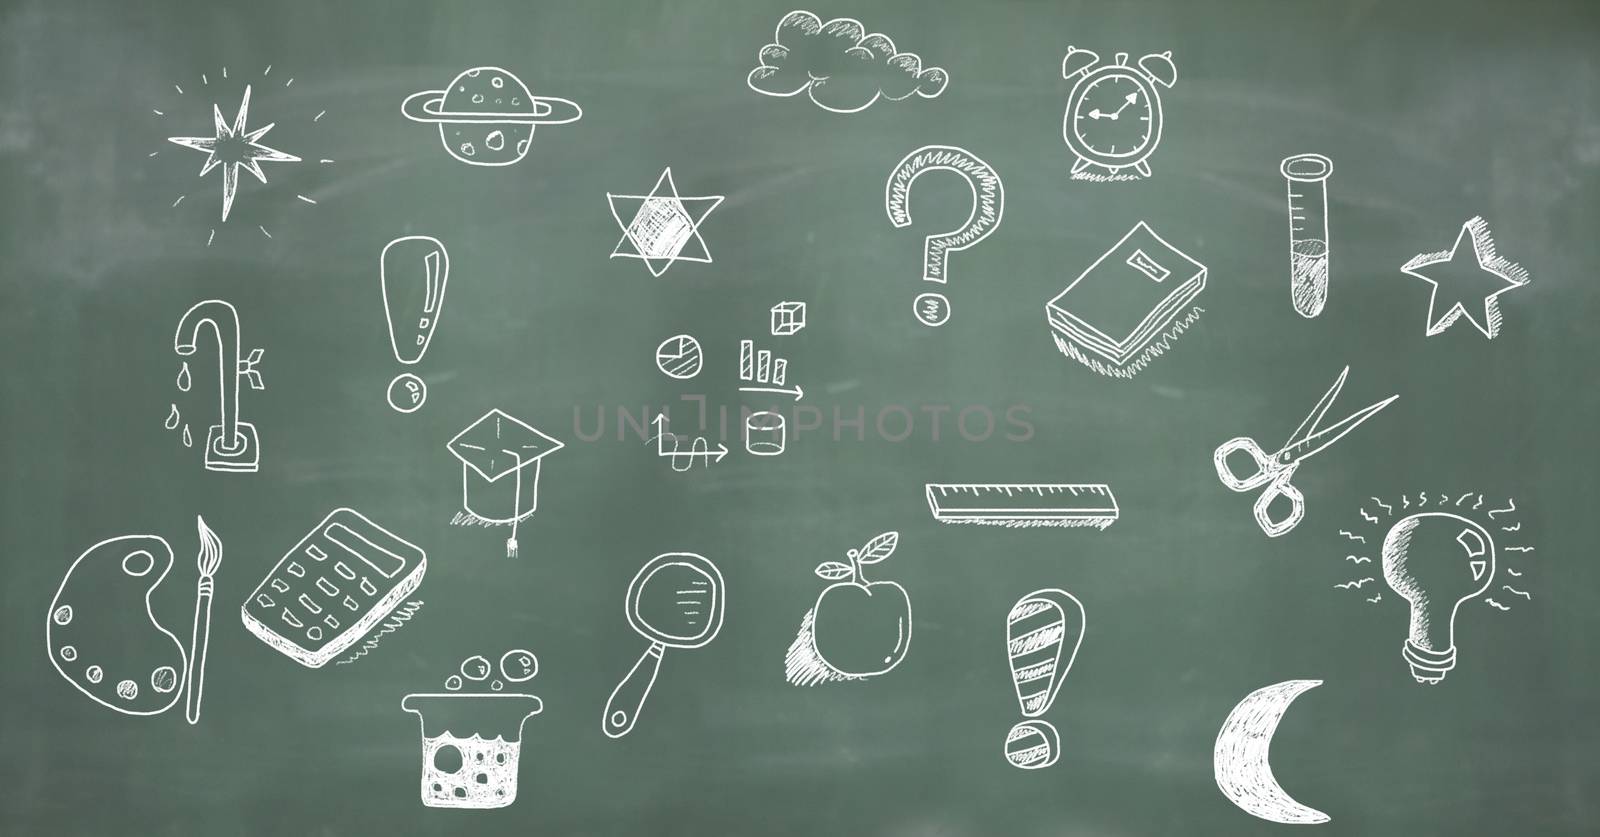 Education drawing on blackboard for school by Wavebreakmedia